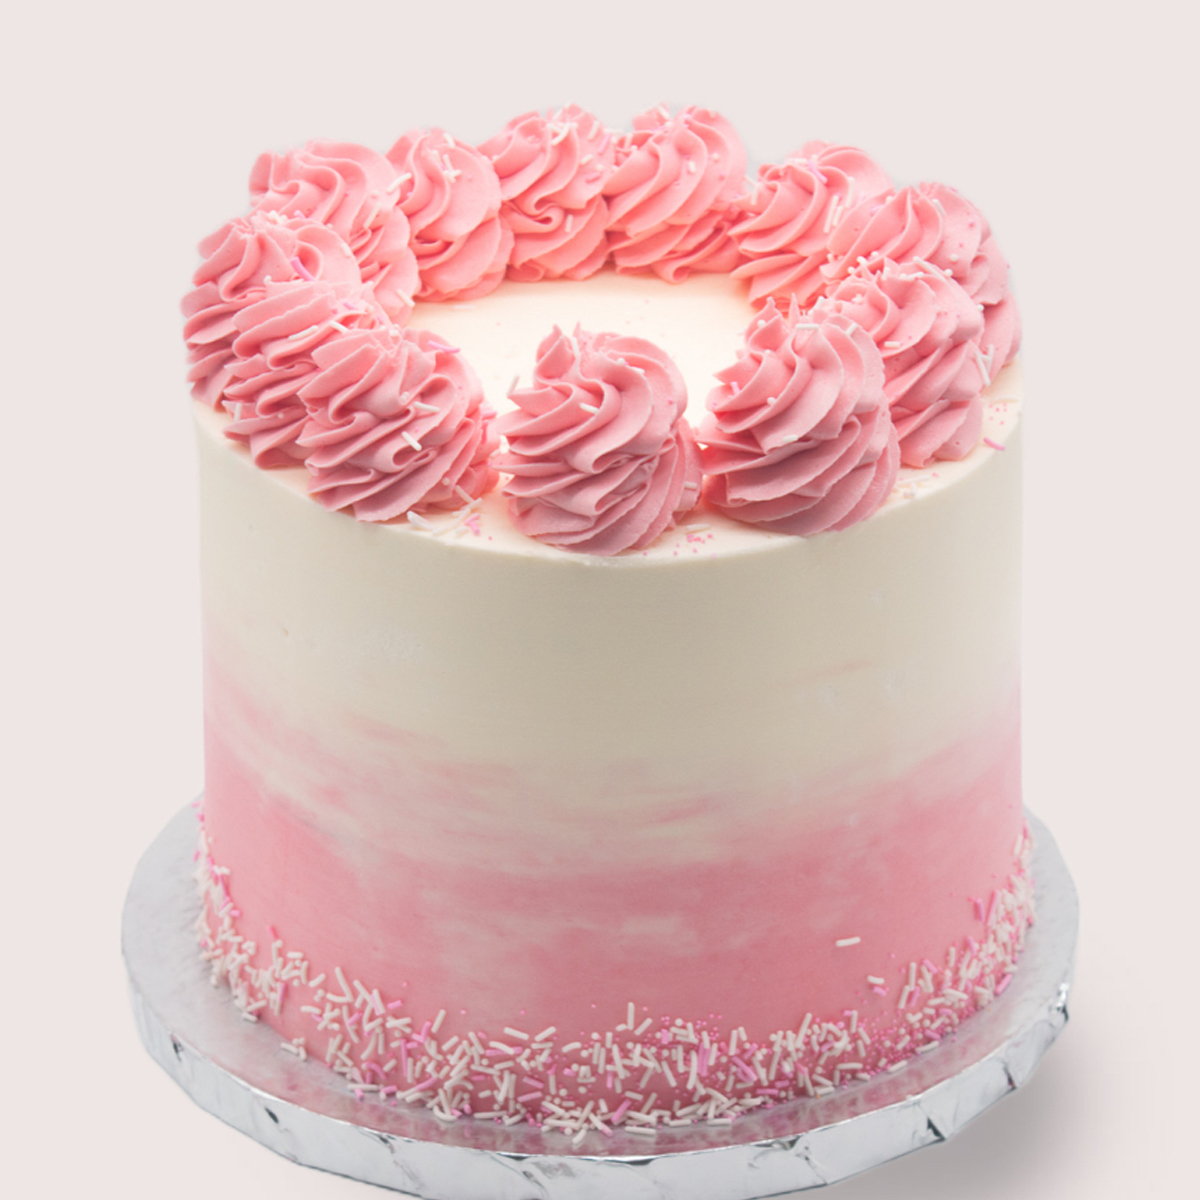 Pink-Velvet-Cake